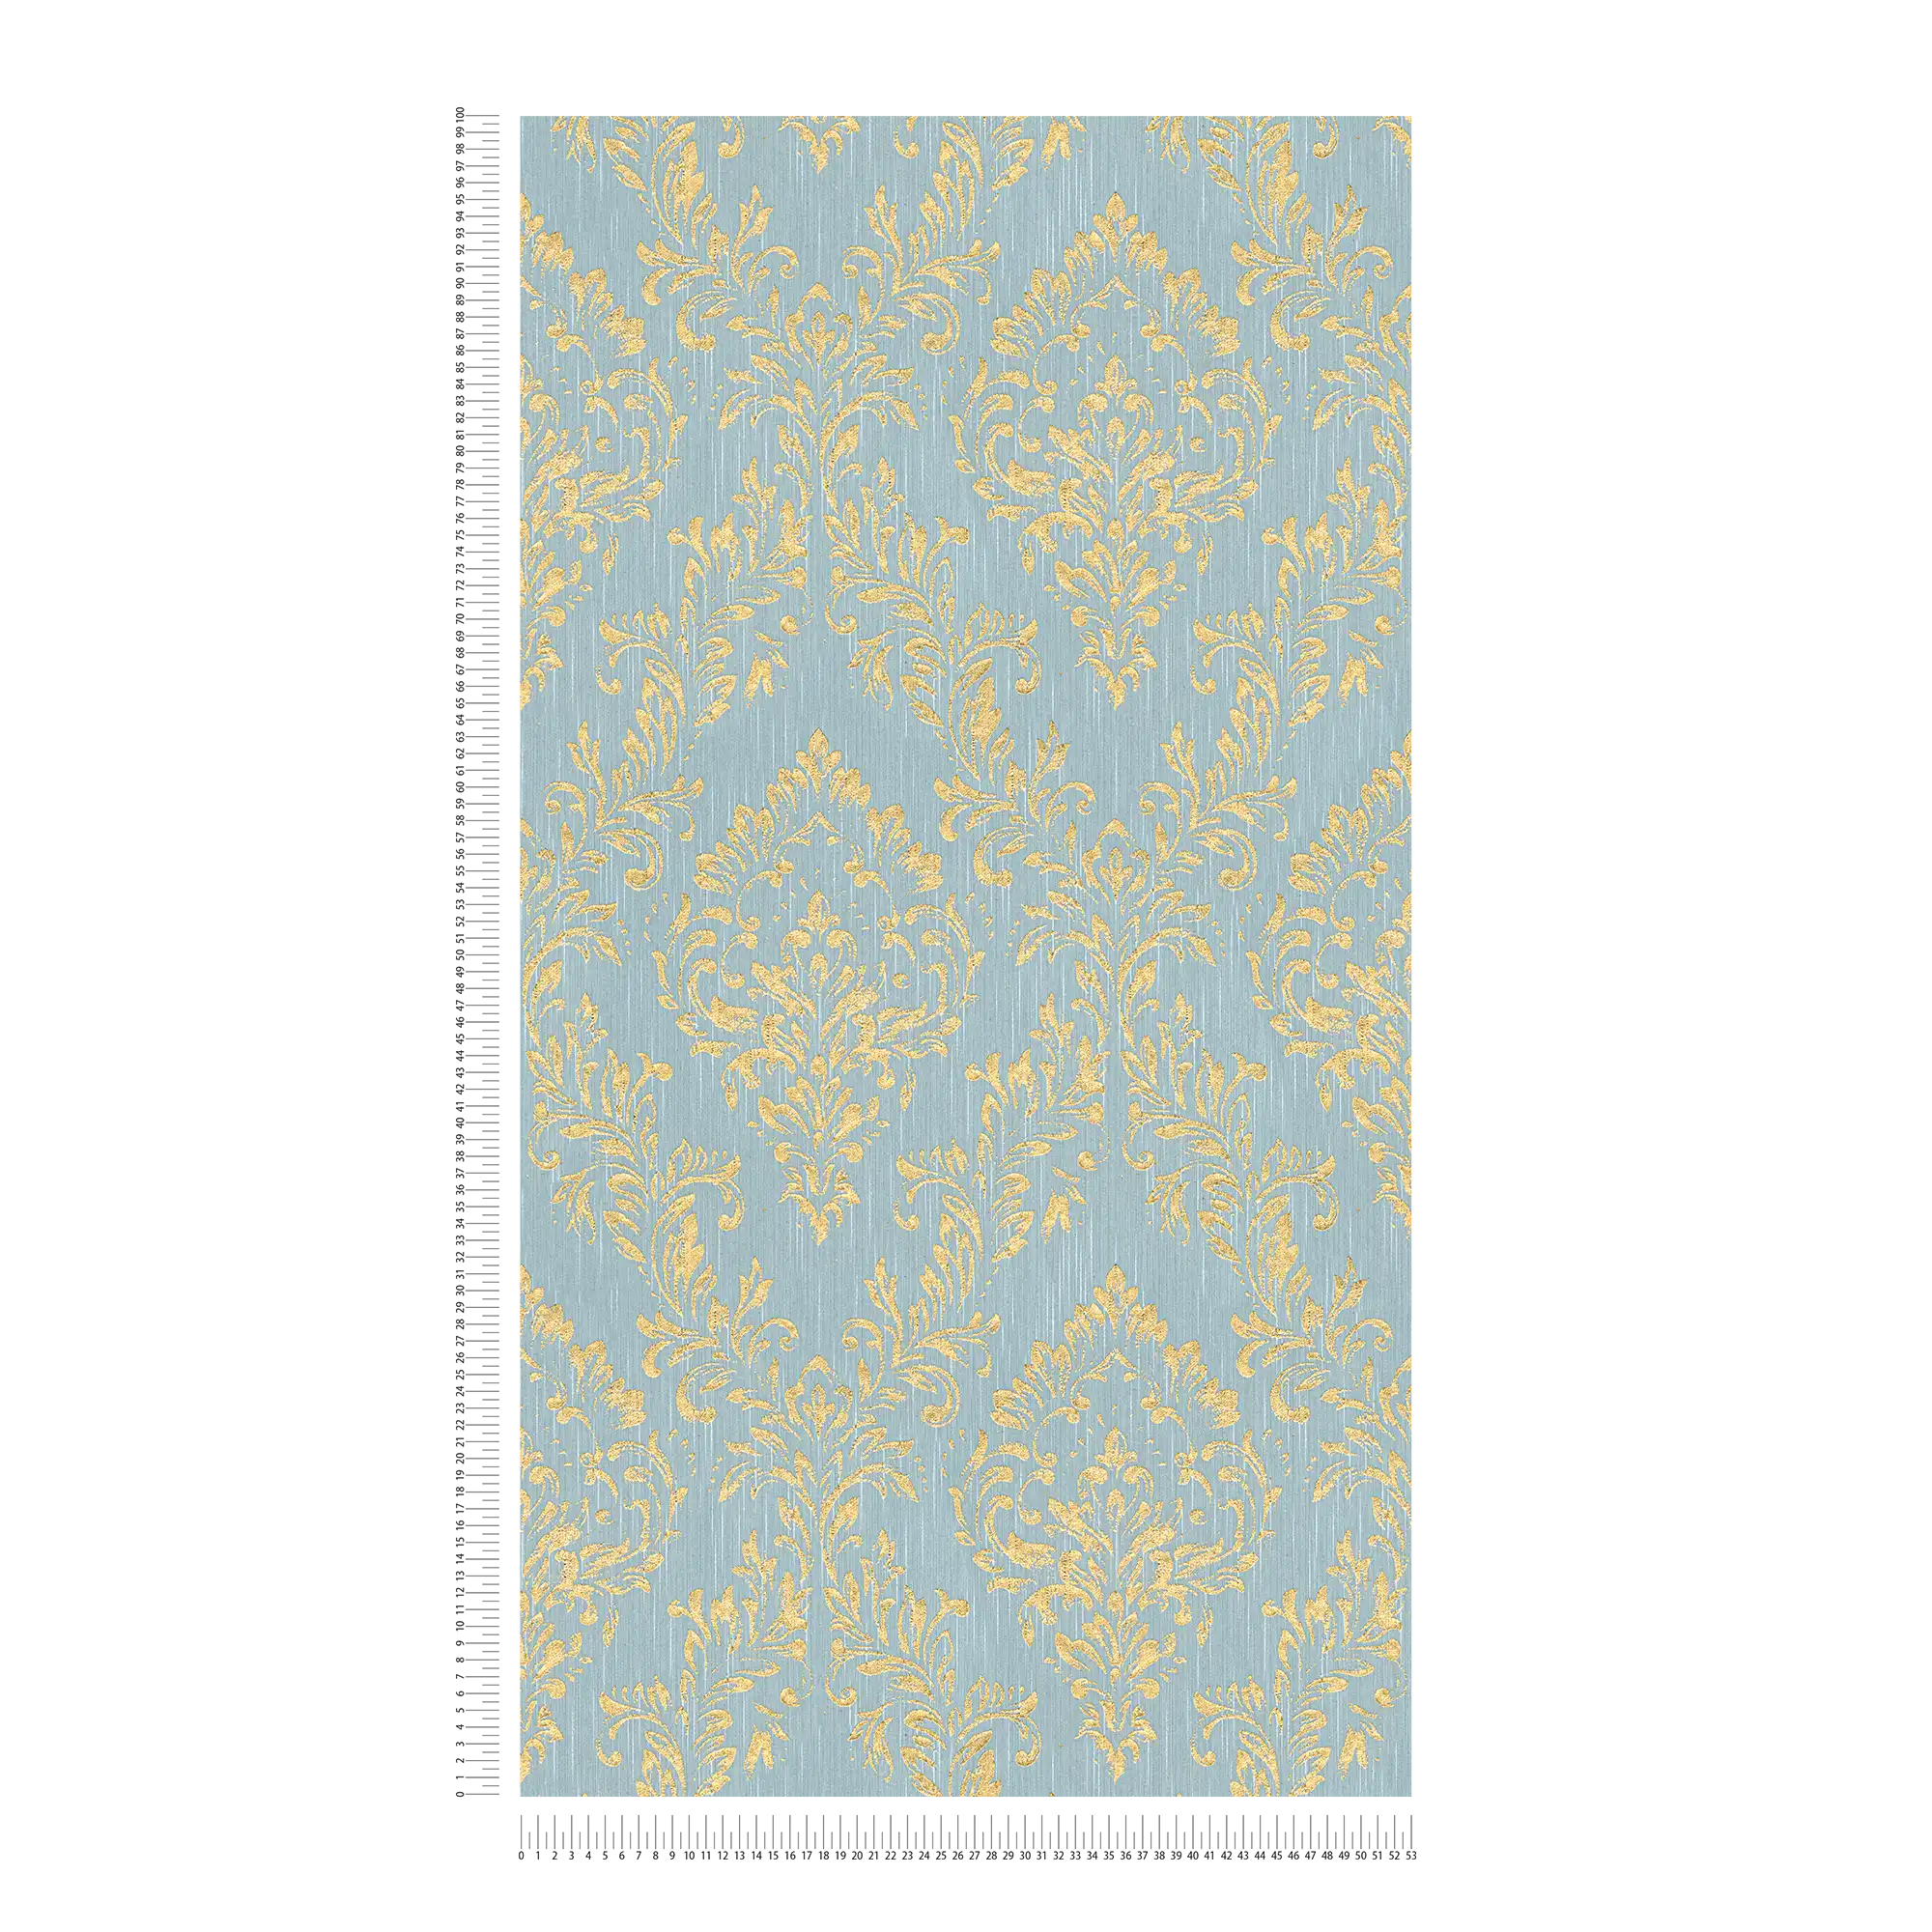             Papier peint ornemental floral avec effet scintillant doré - or, bleu, vert
        